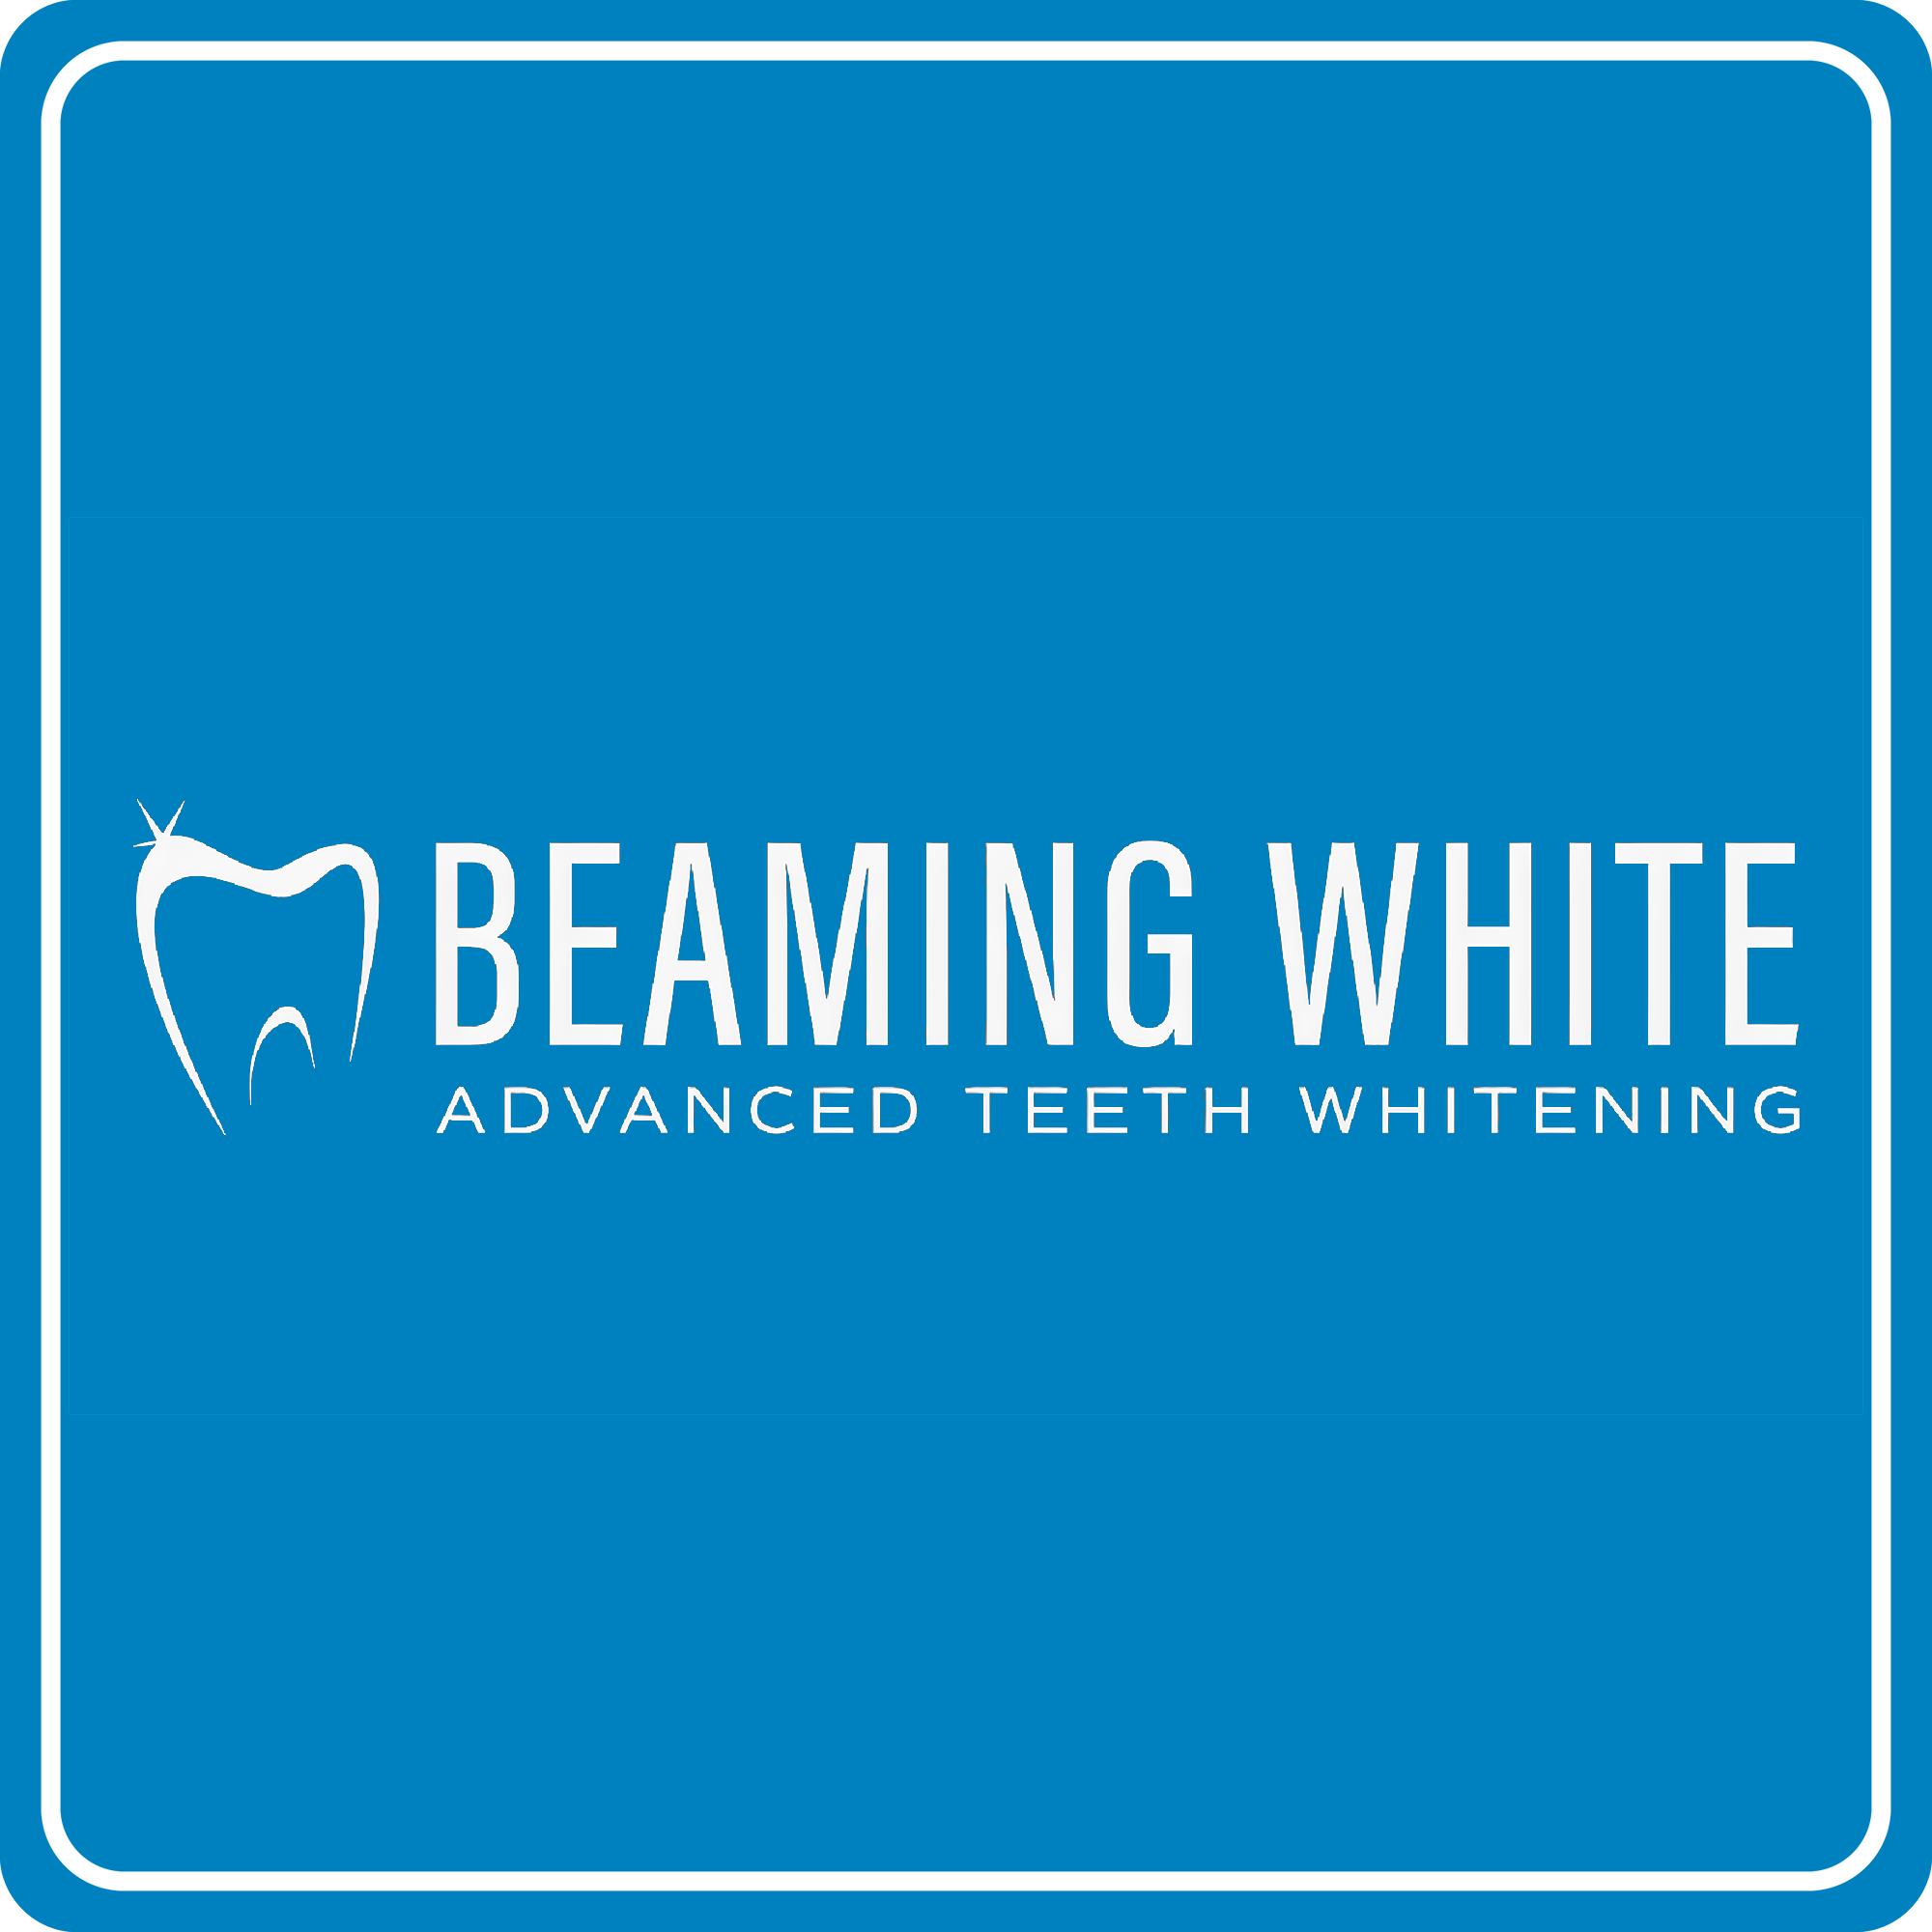 BEAMING WHITE